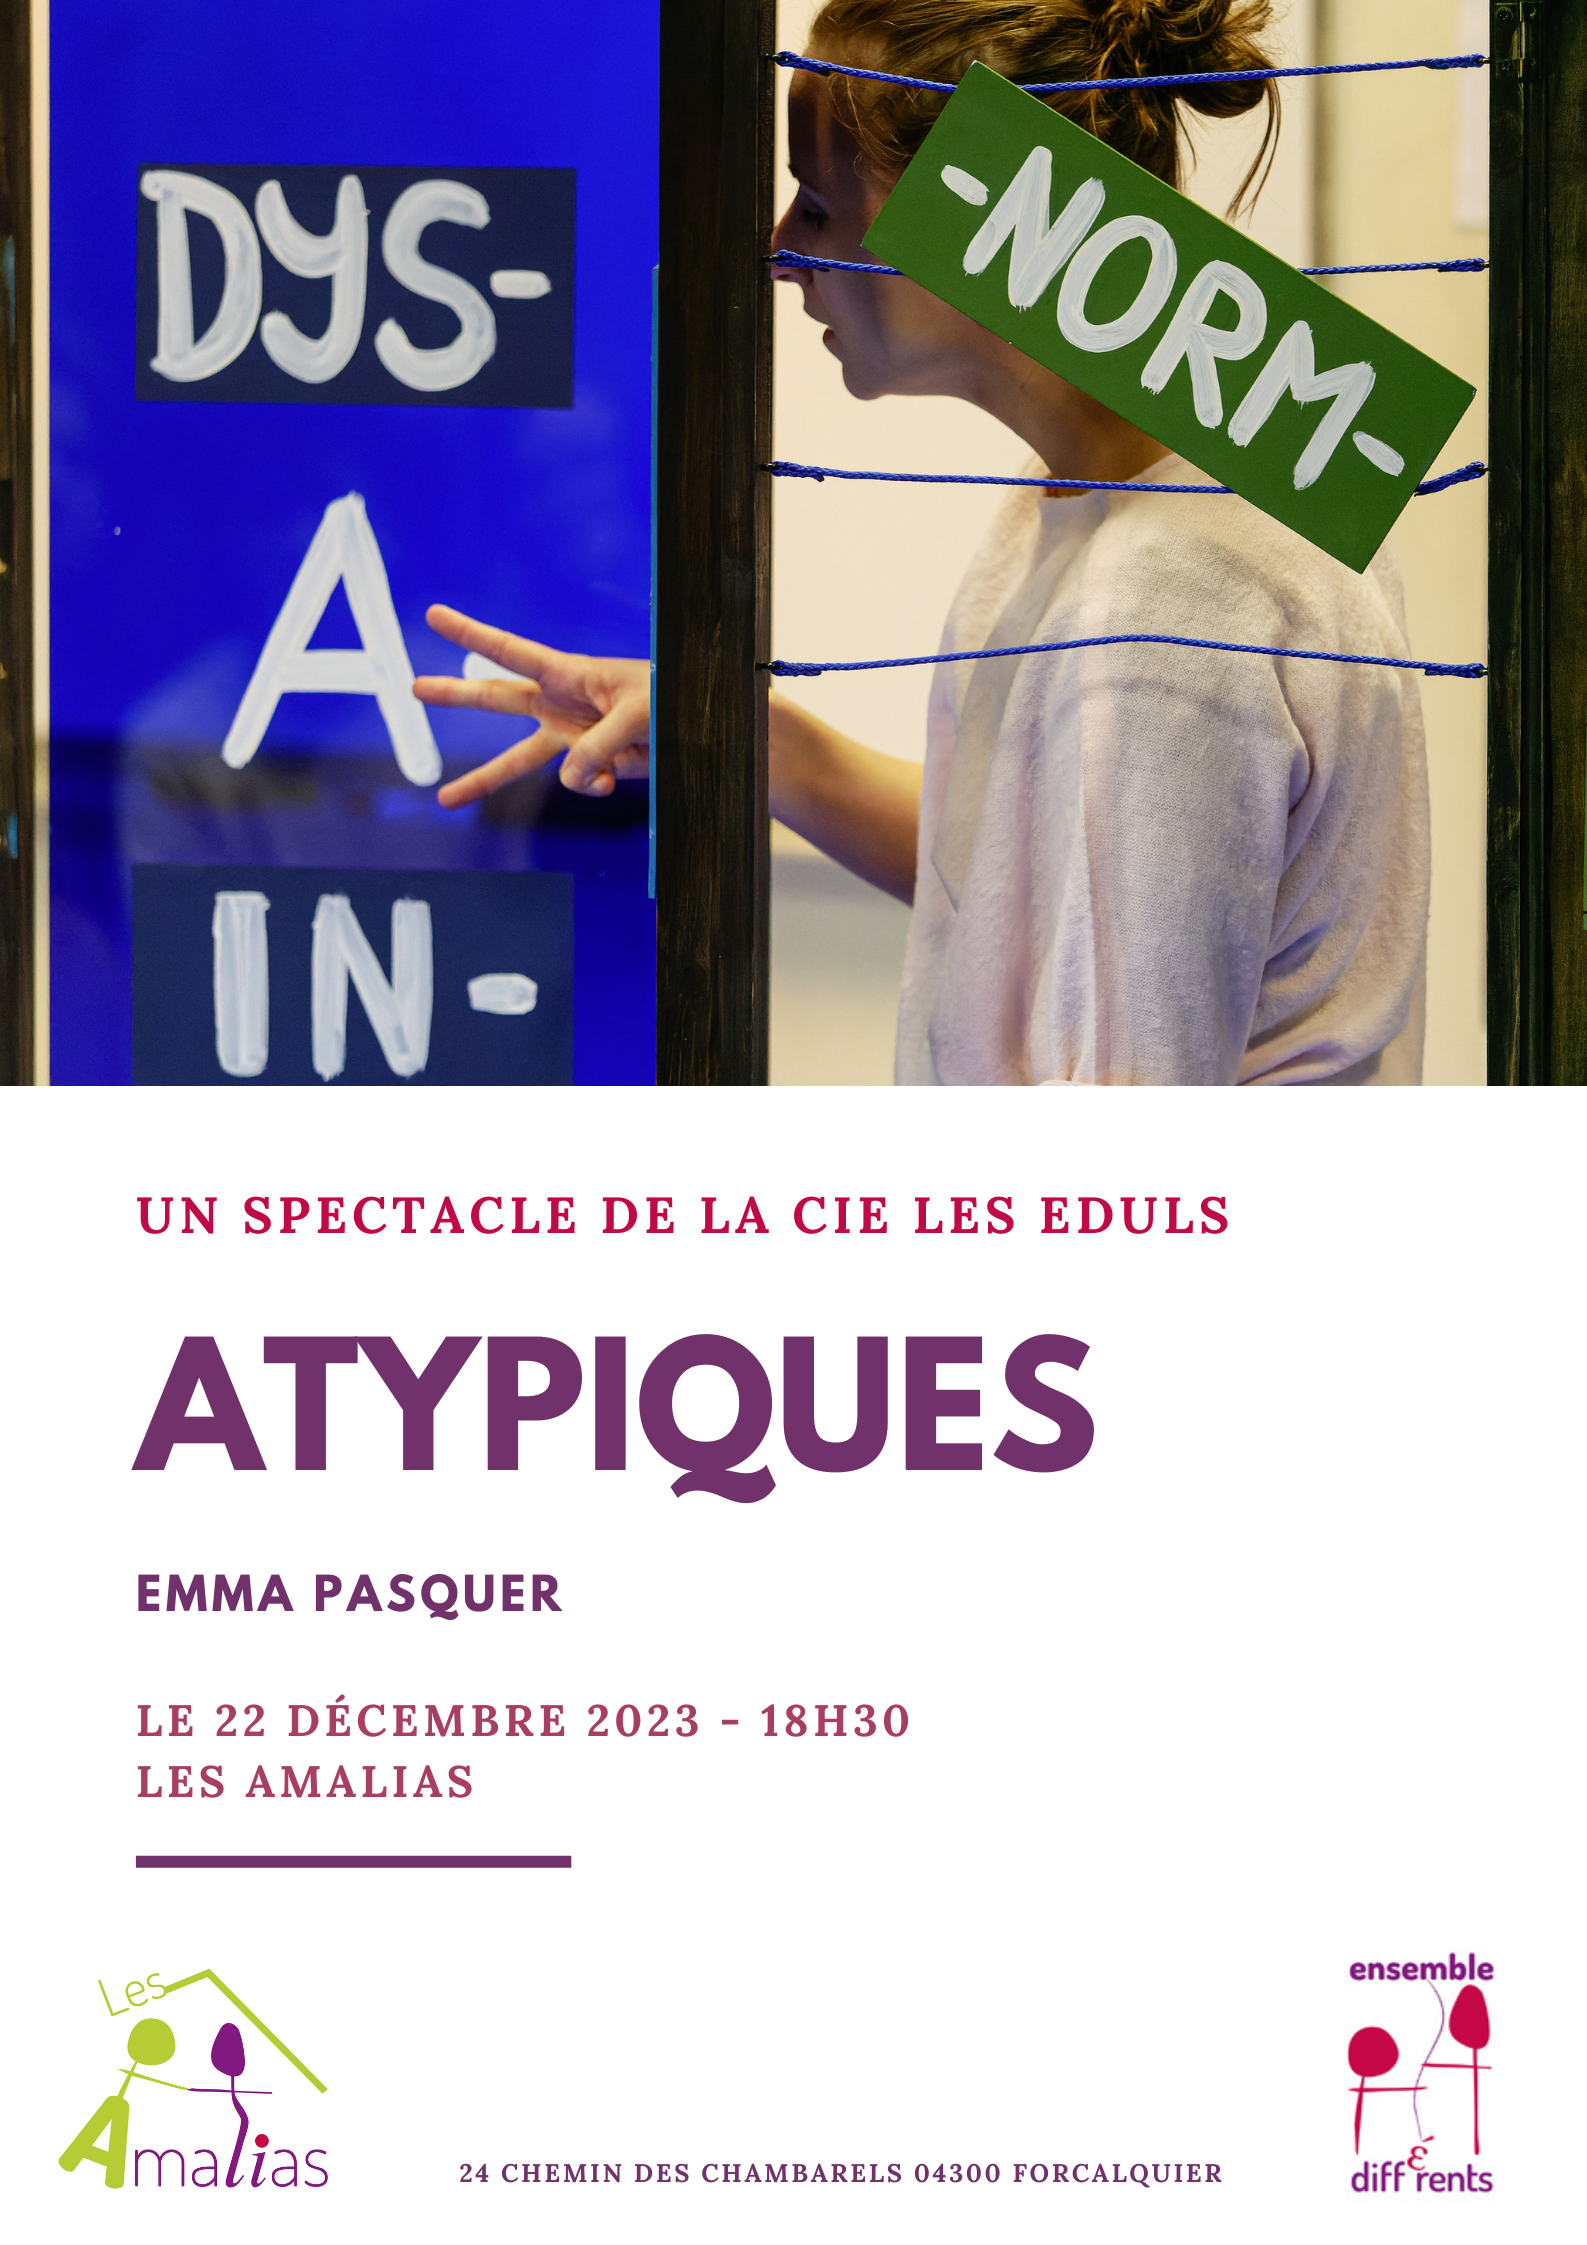 Atypiques - spectacle Emma Pasqur les Amalias